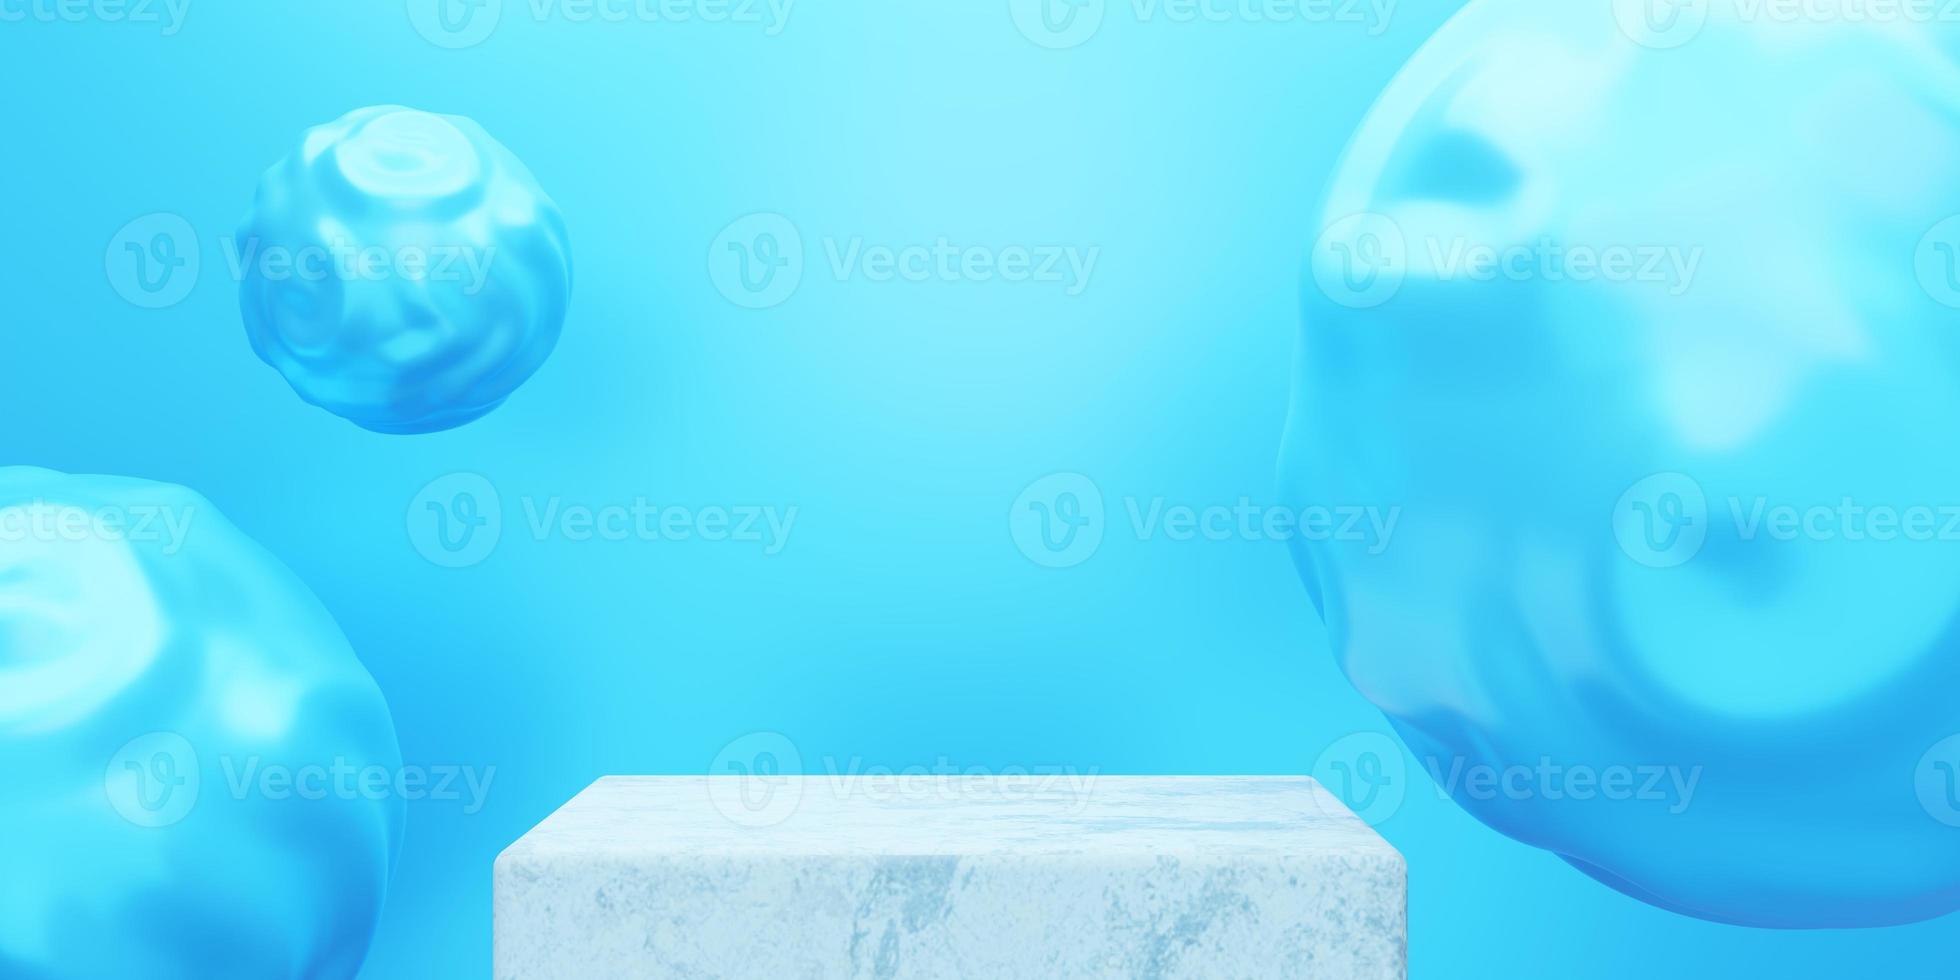 3D-Rendering des leeren Podiums minimaler blauer Hintergrund. szene für werbedesign, kosmetikwerbung, show, showroom, technik, lebensmittel, banner, creme, mode, kind, luxus. Illustration. Warenpräsentation foto